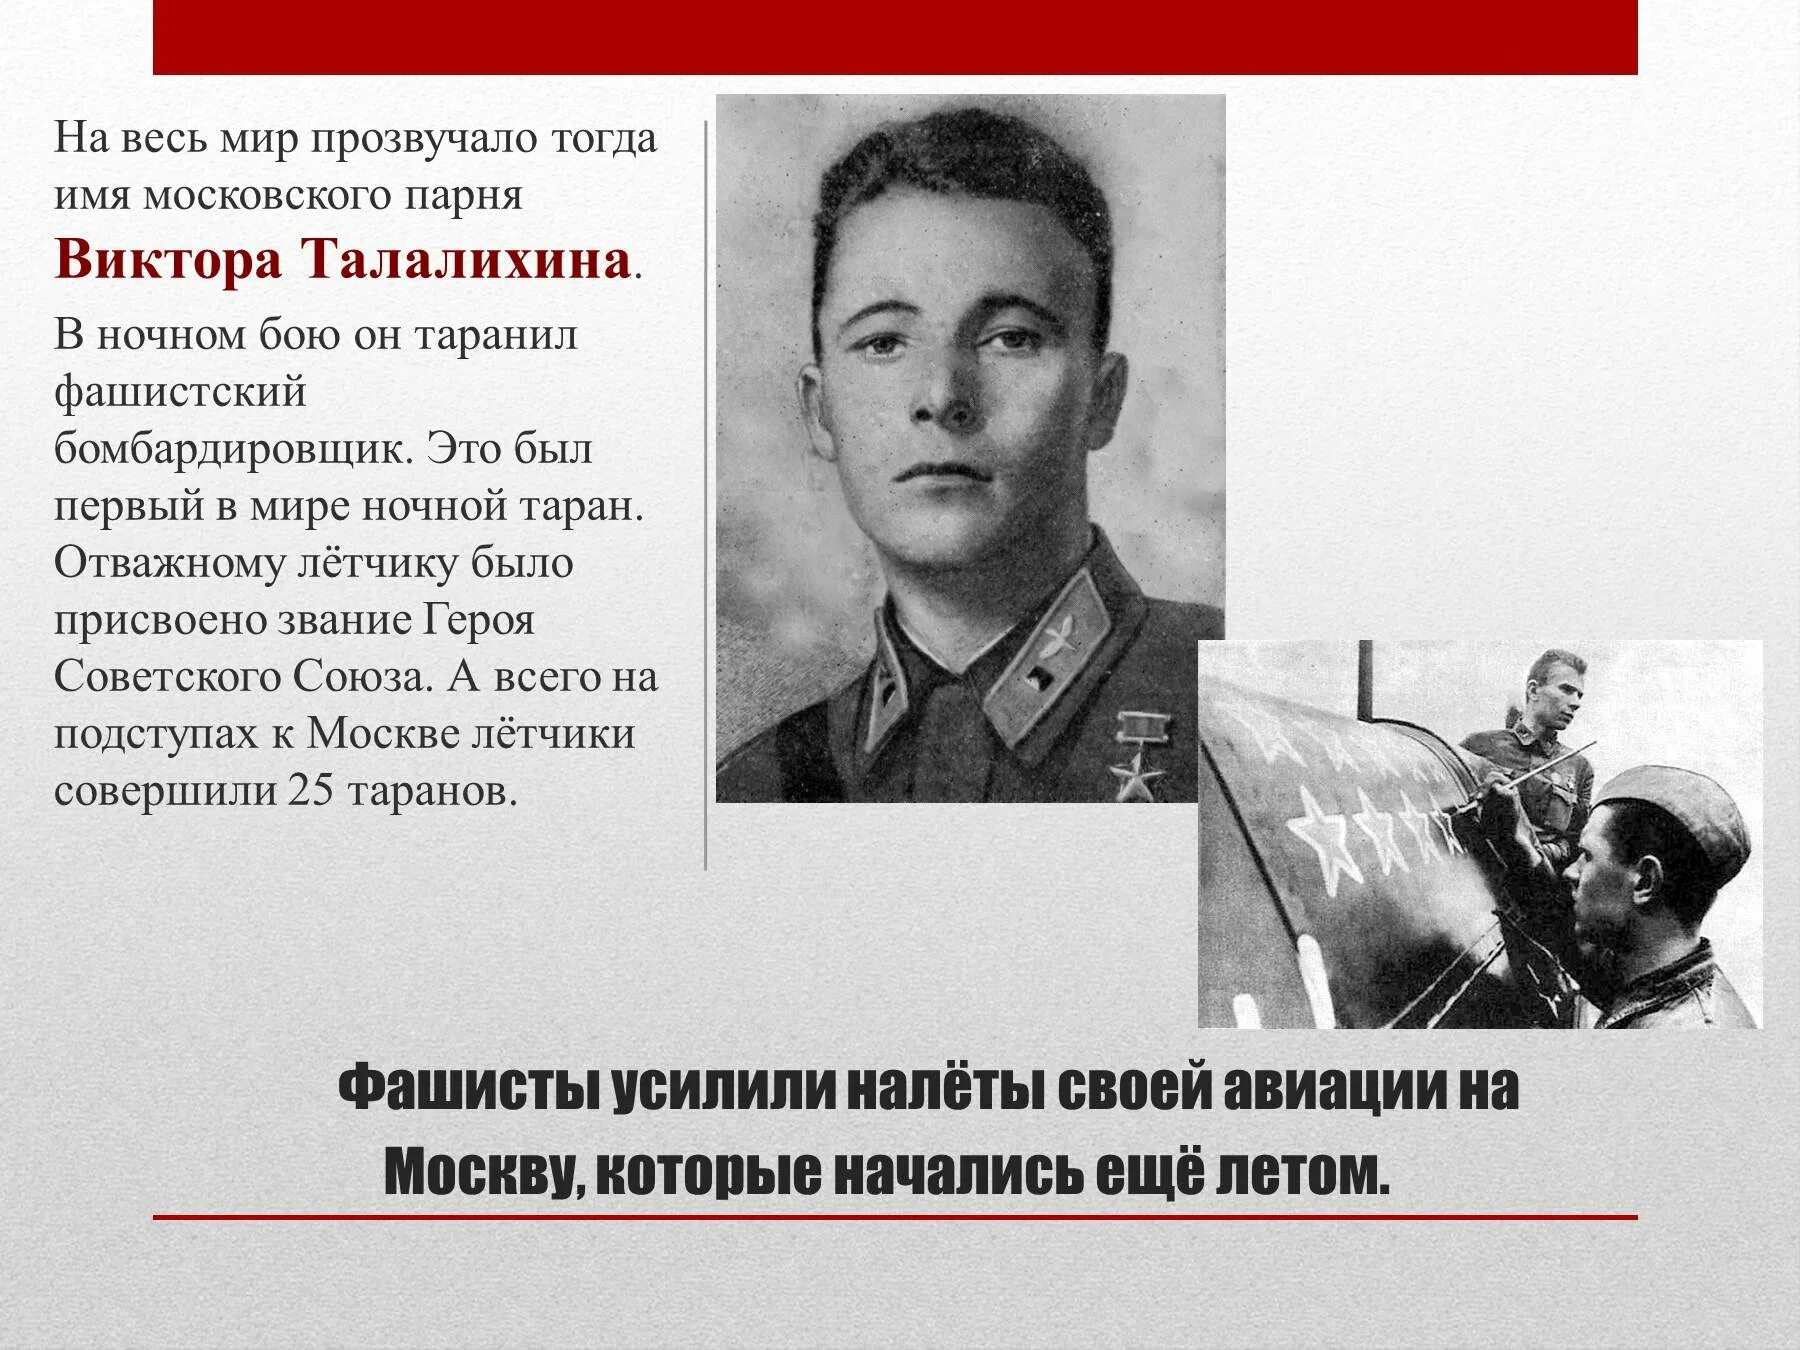 Один из первых летчиков совершивших ночной таран. Талалихин герой советского Союза. Подвиг лётчика Виктора Талалихина. Талалихин совершил первый ночной Таран.